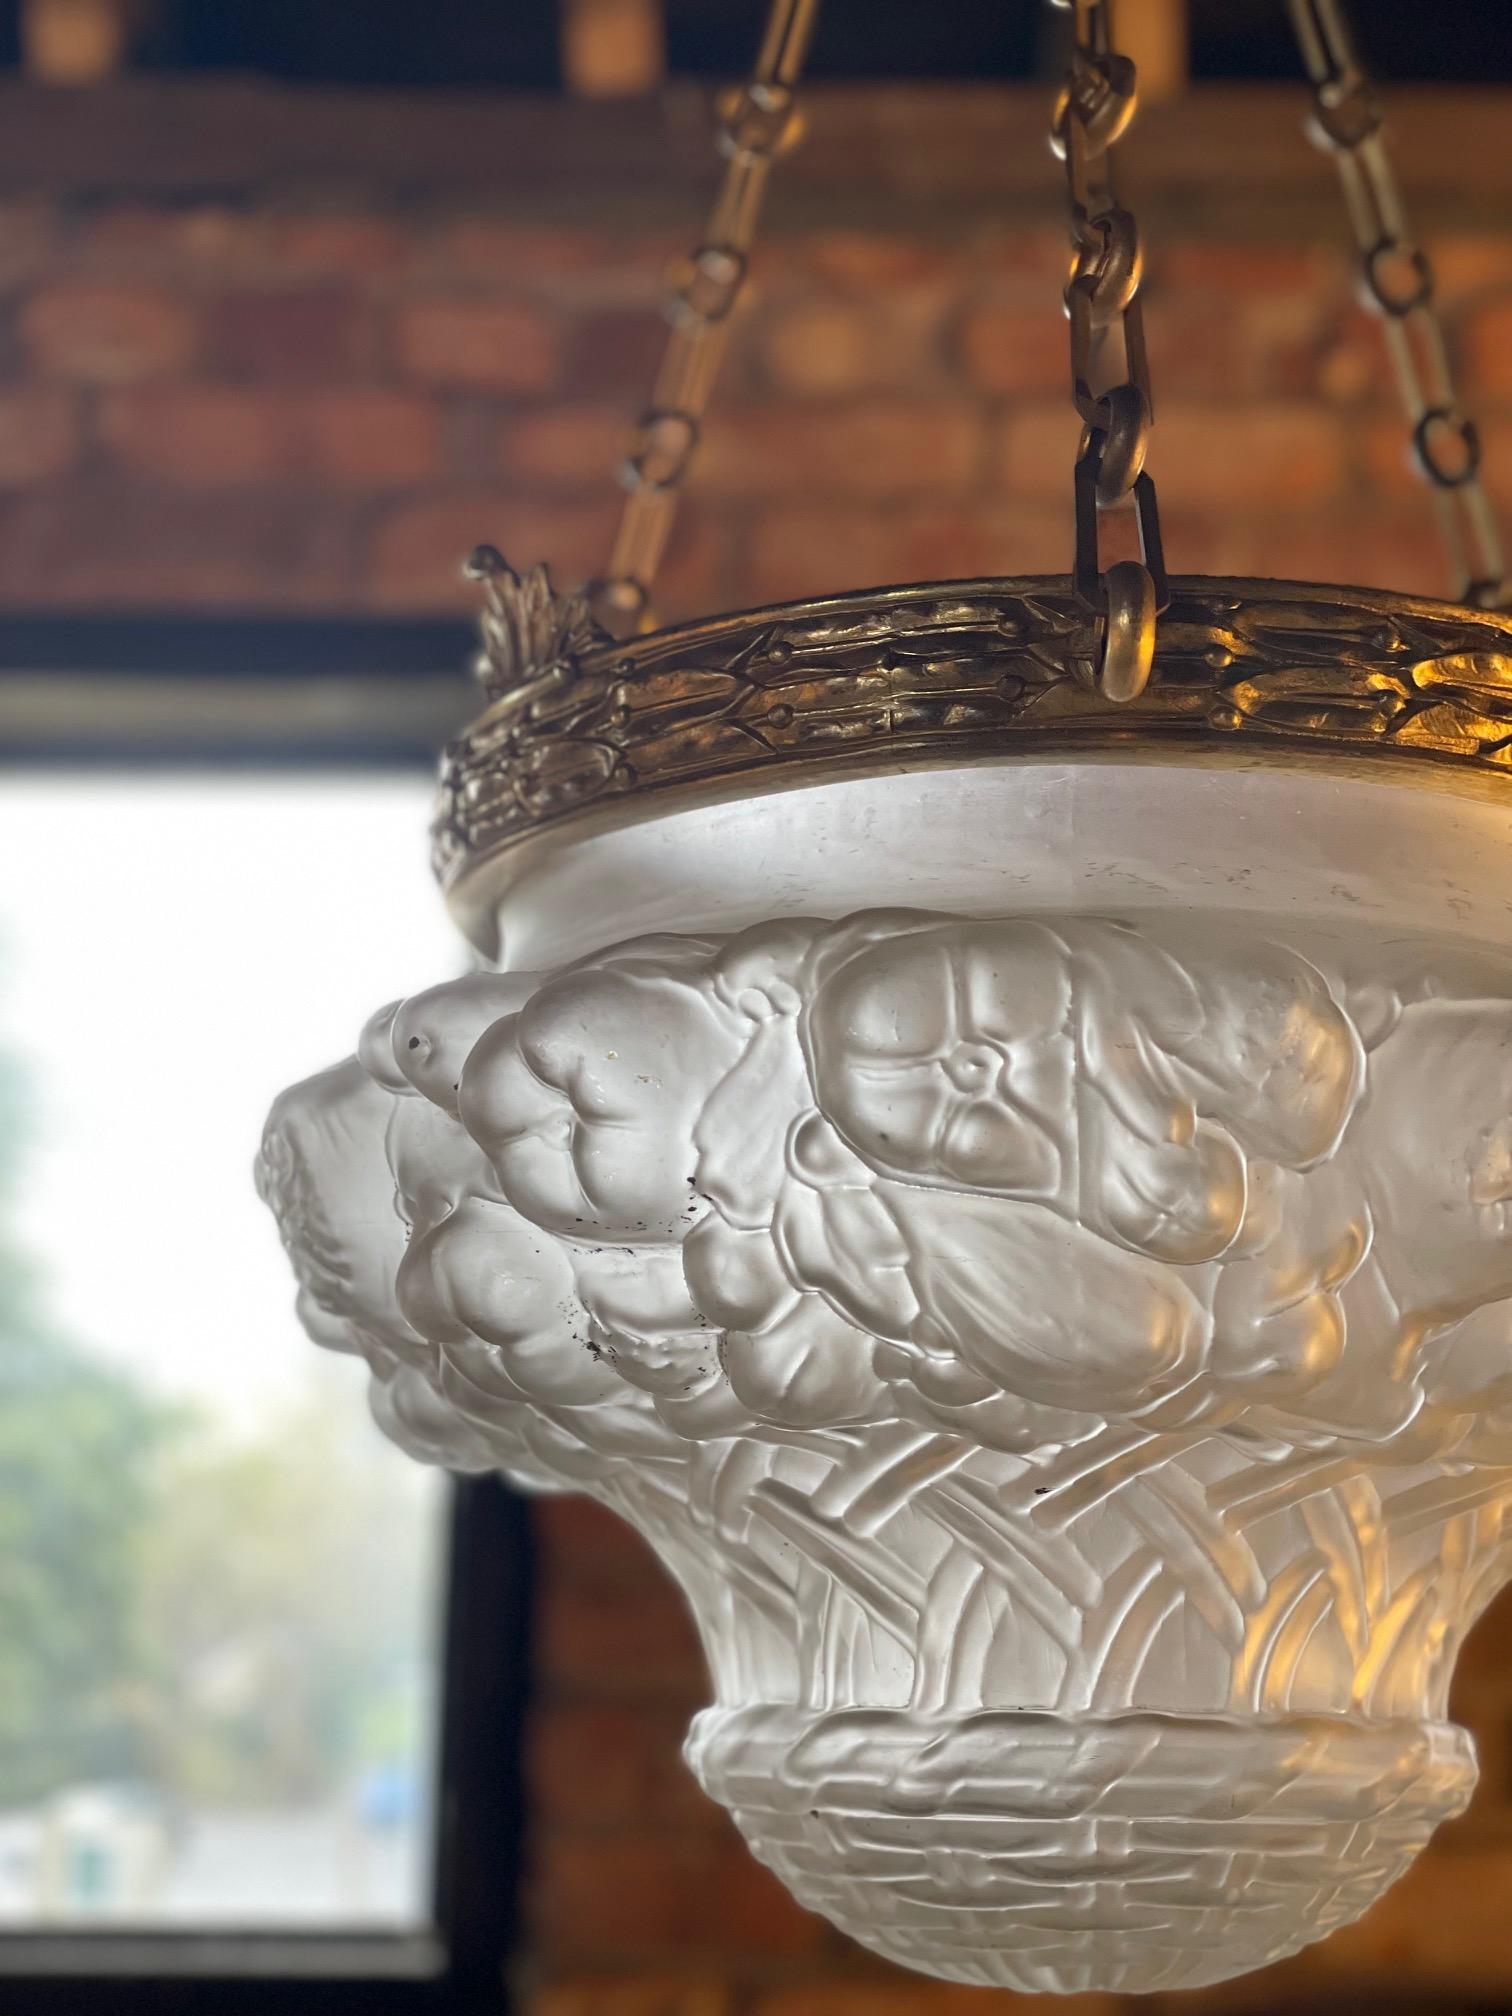 Eine außergewöhnliche späten 19. frühen 20. Jahrhundert Ormolu und Milchglas Plafonnier.
Die Glasschale ist in Form einer Obstschale reich verziert, und die Qualität setzt sich in der gesamten Ormolu-Bandage fort.